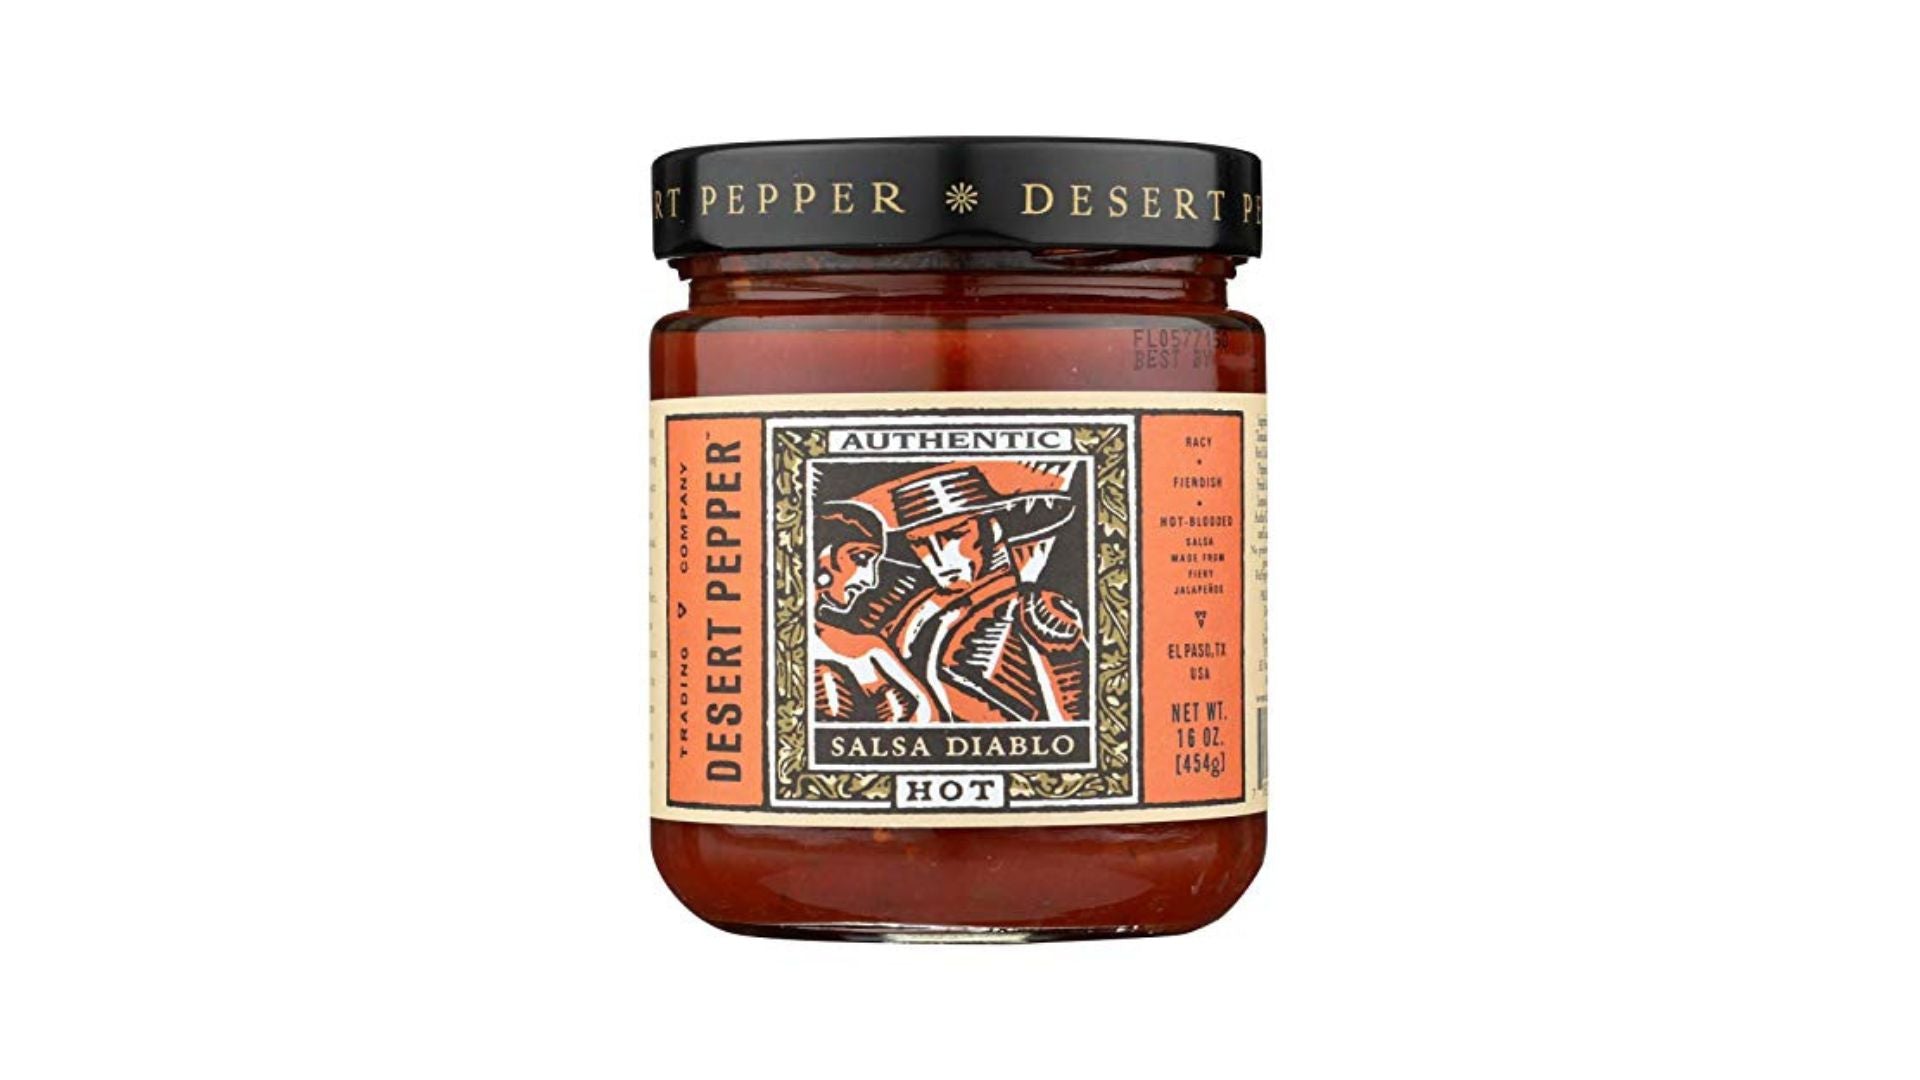 Desert Pepper Salsa Diablo Hot 454g